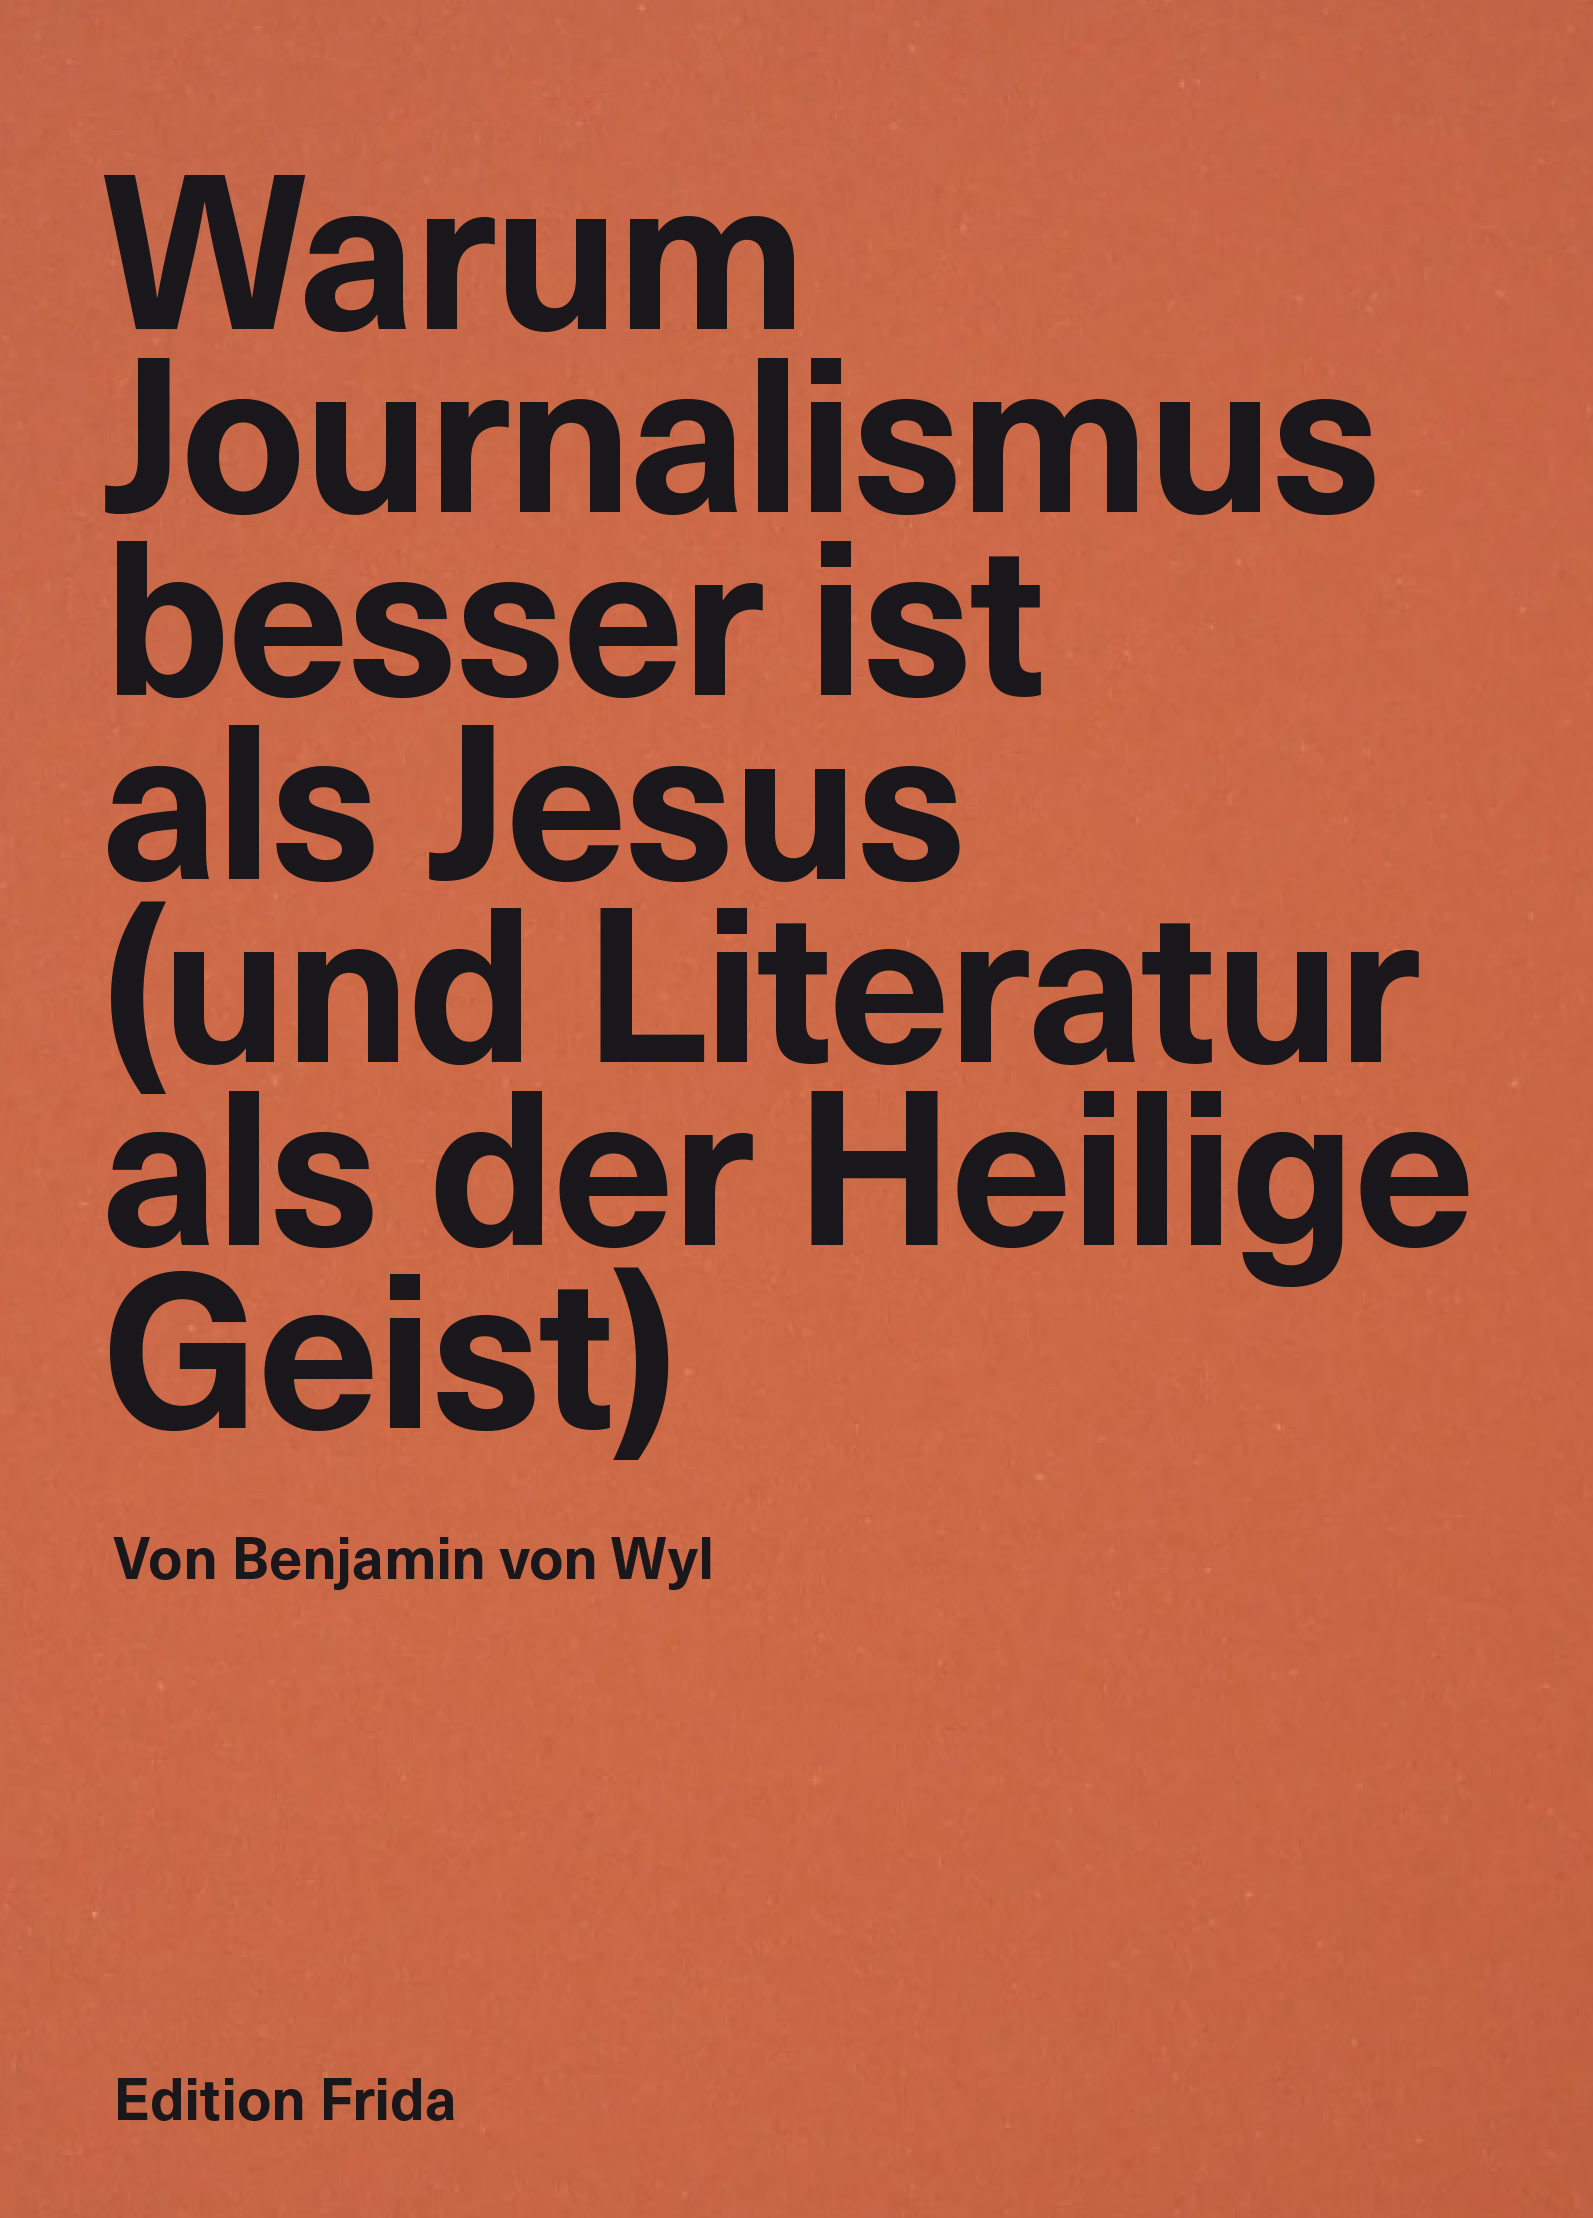 Warum Journalismus besser ist als Jesus (und Literatur besser als der Heilige Geist) Cover